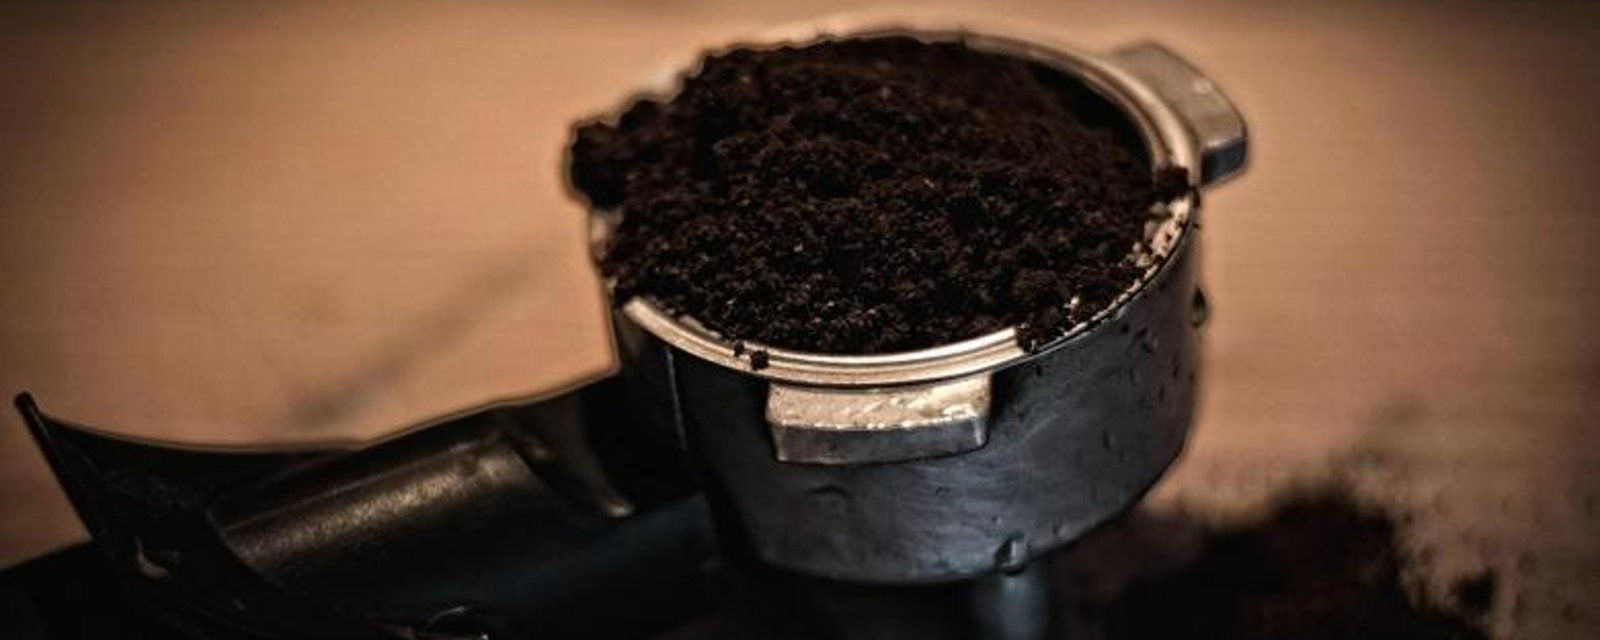 6 façons astucieuses de réutiliser le café! 